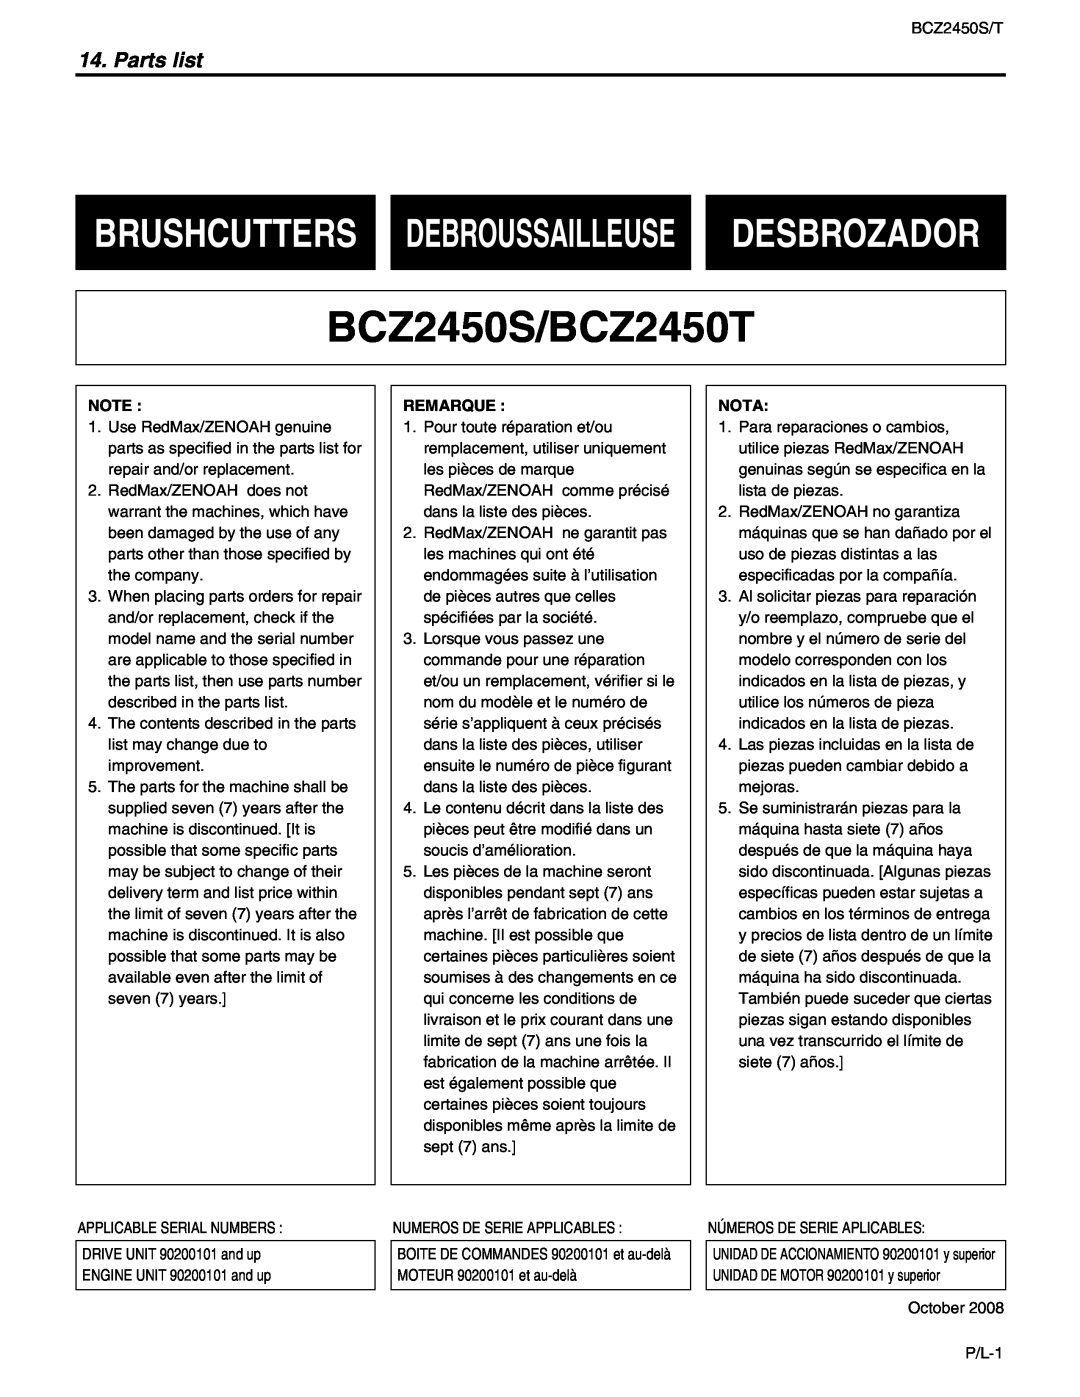 RedMax manual BCZ2450S/BCZ2450T, Brushcutters Debroussailleuse Desbrozador, Parts list 